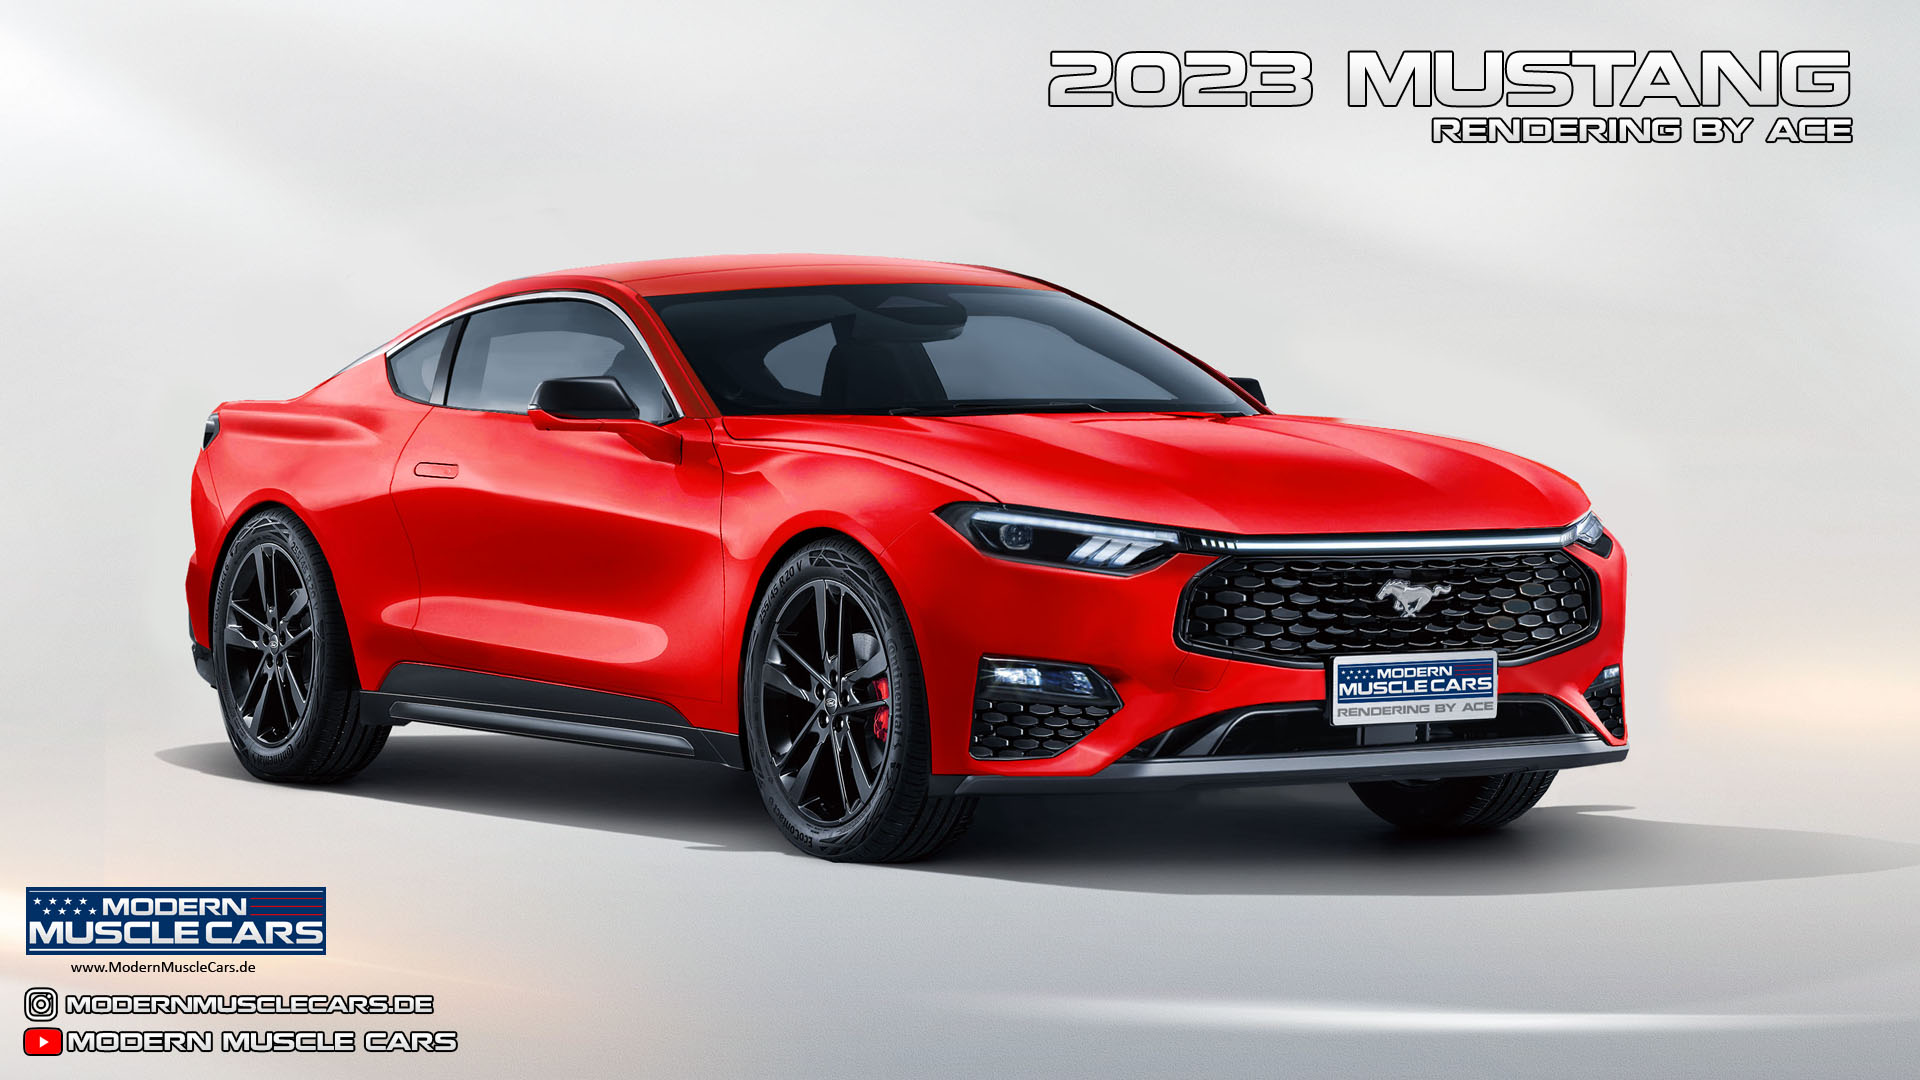 Mustang7_Red_ModernMuscleCars_v2.jpg